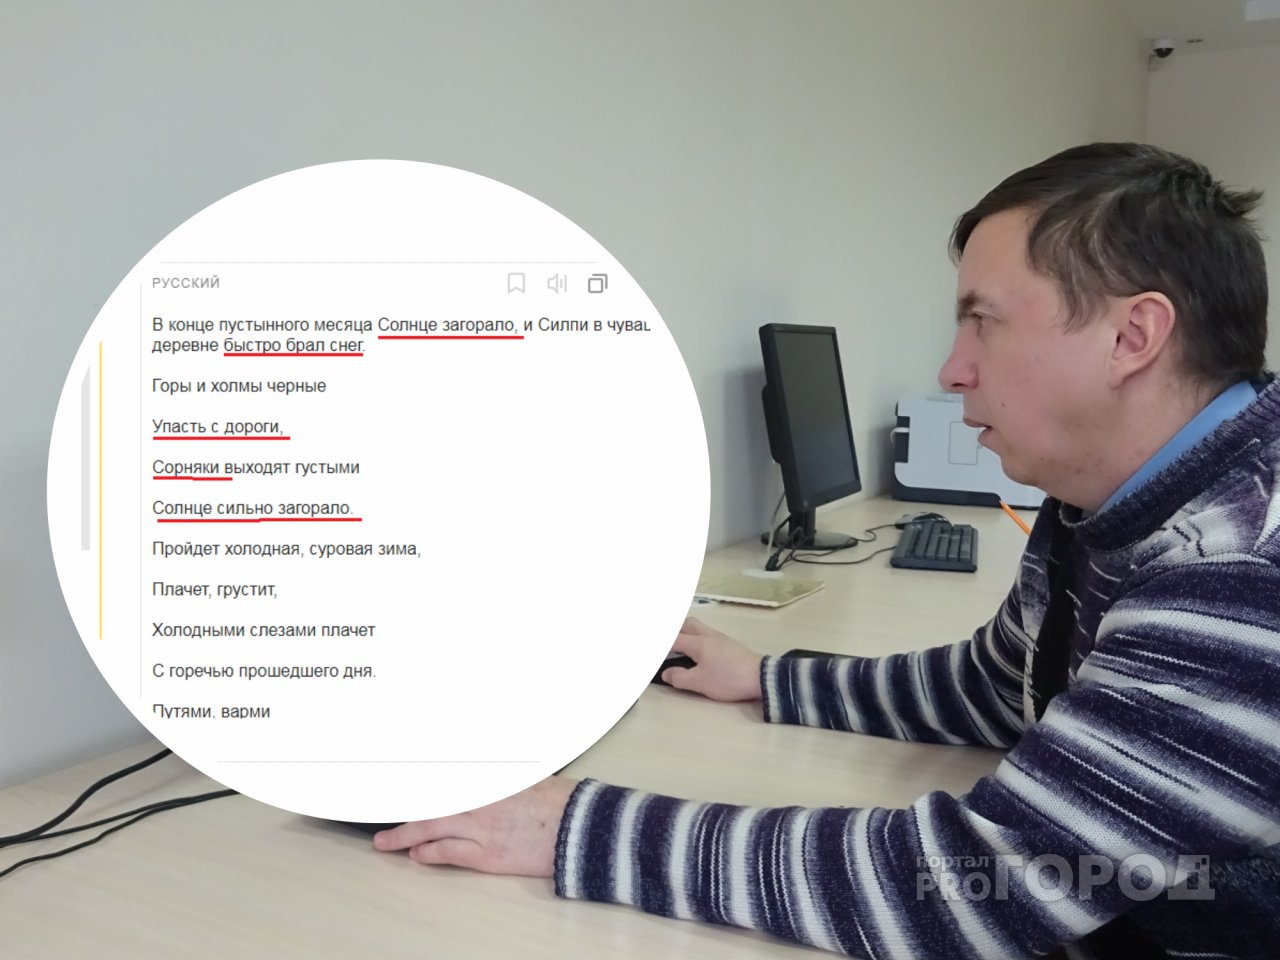 "Солнце загорало" и другие забавные ошибки переводчика чувашского языка от "Яндекса"